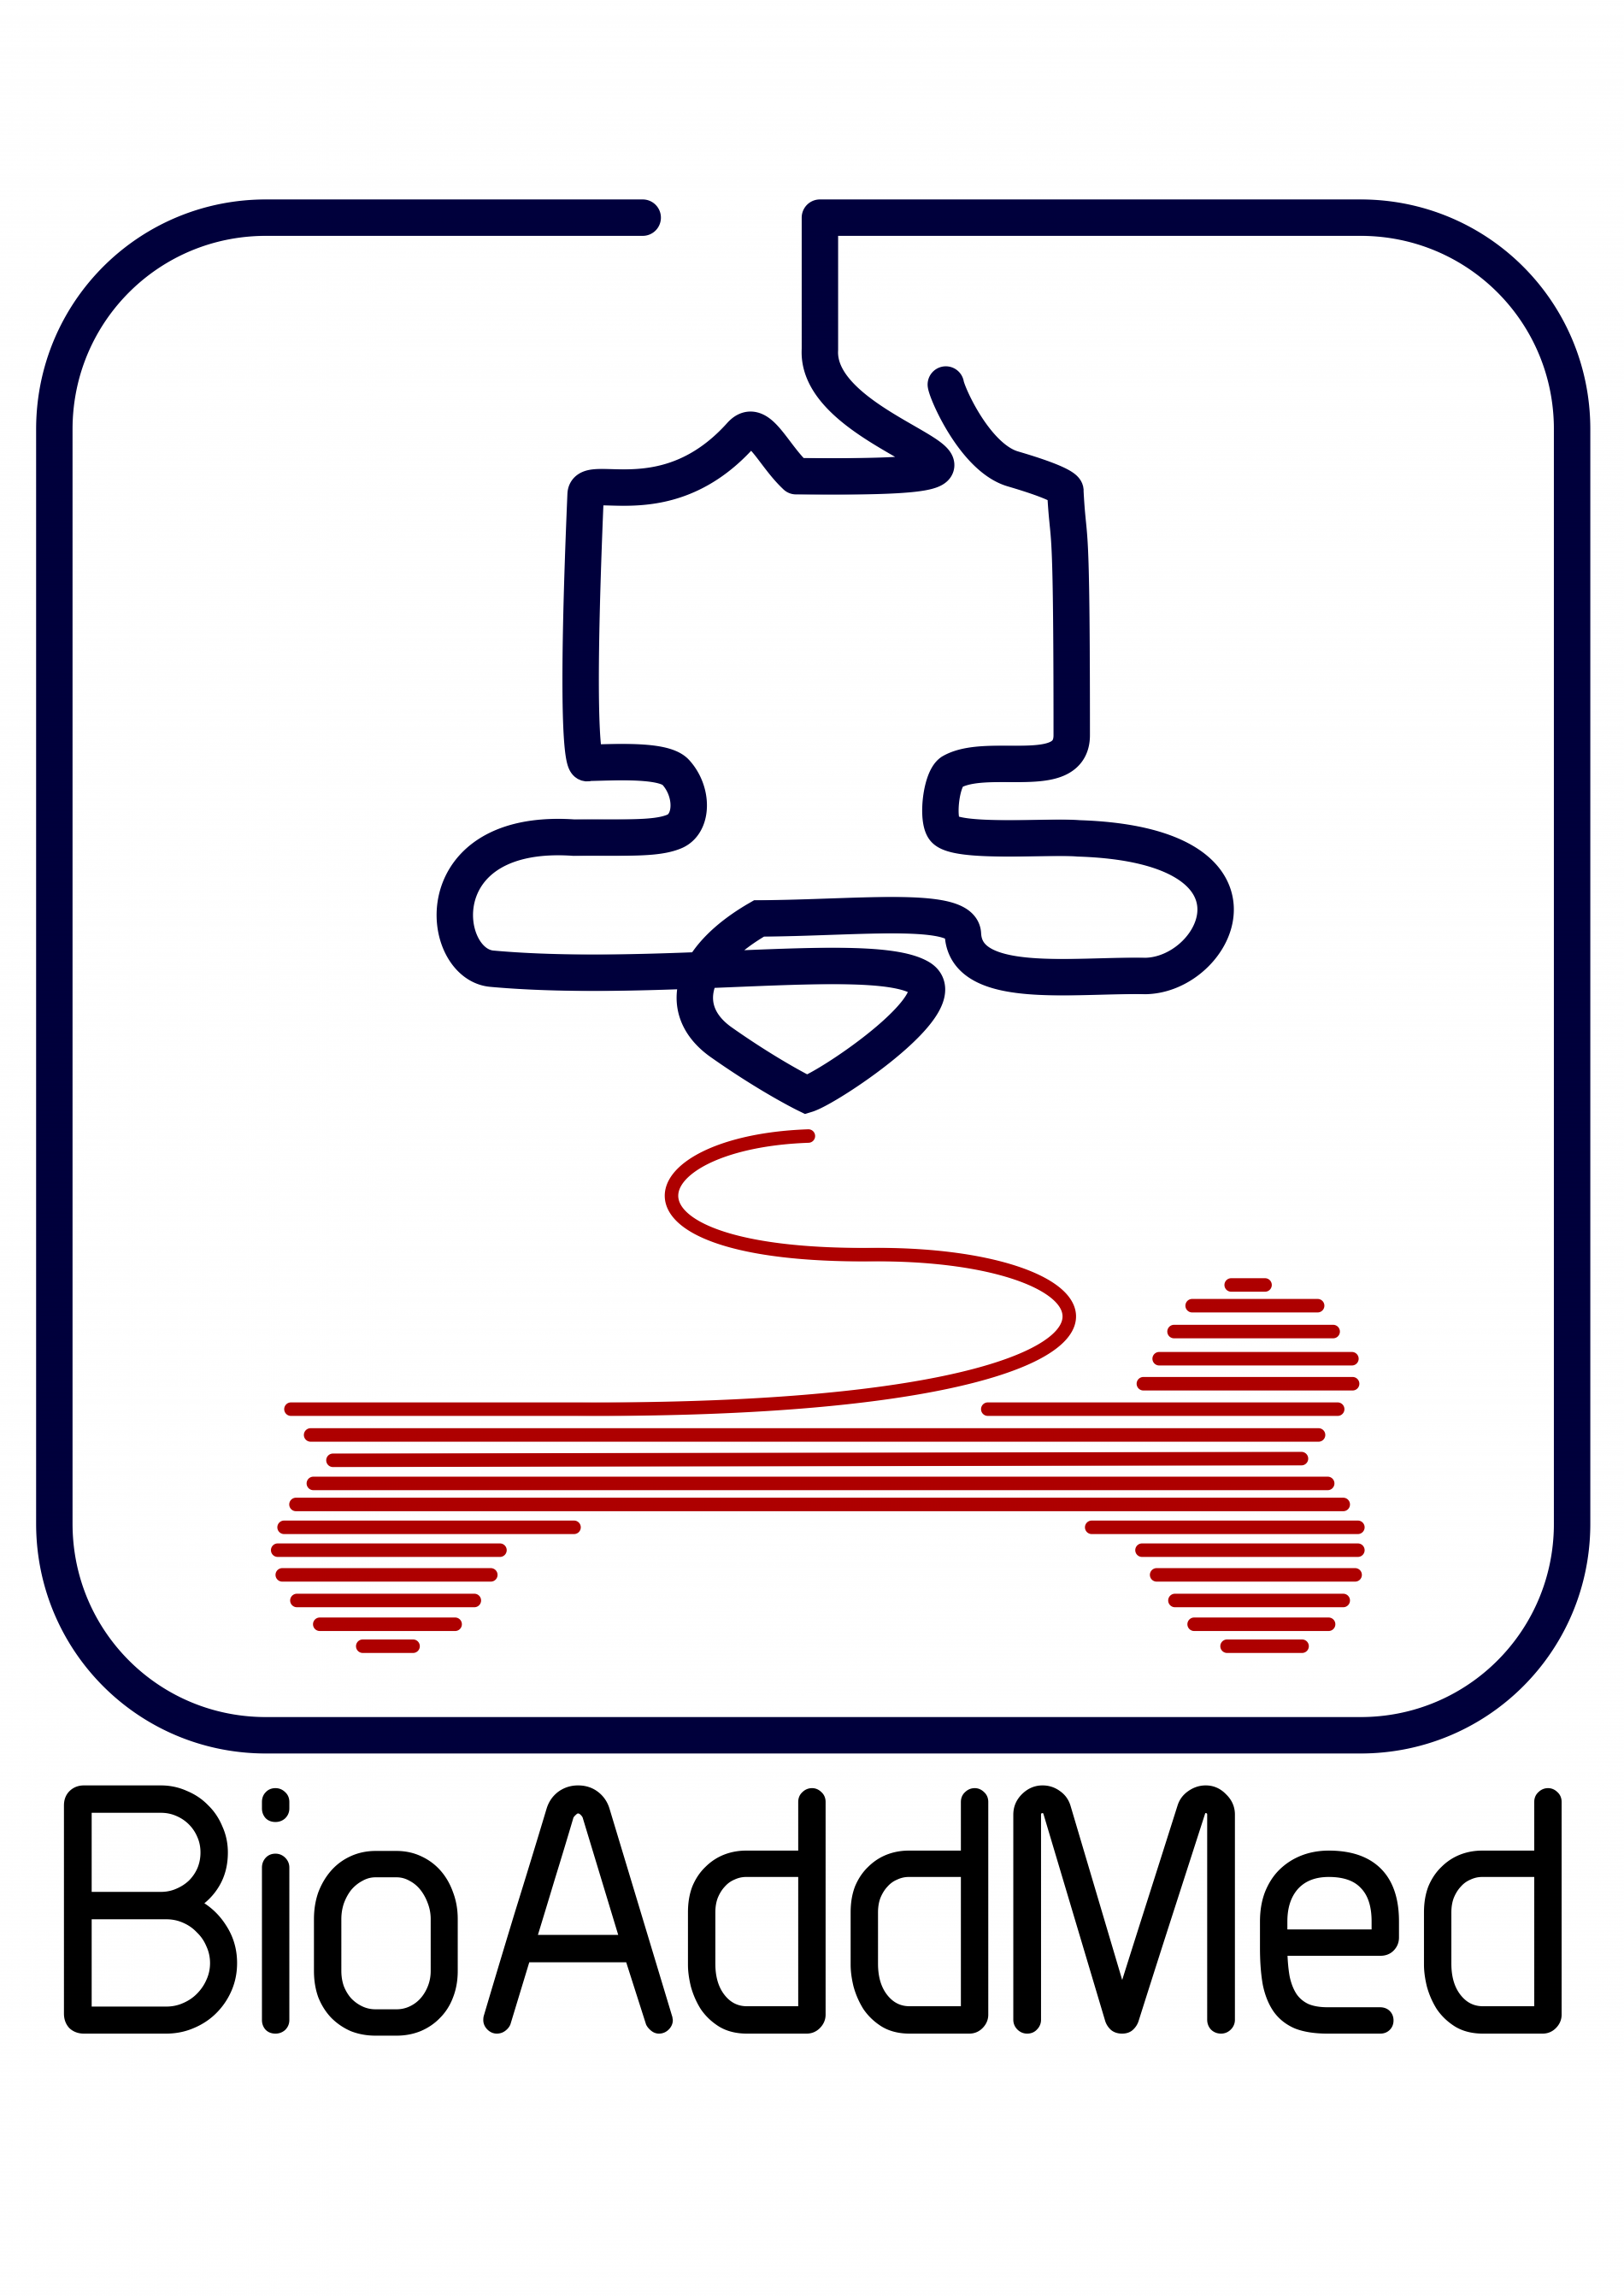 bioaddmed.png